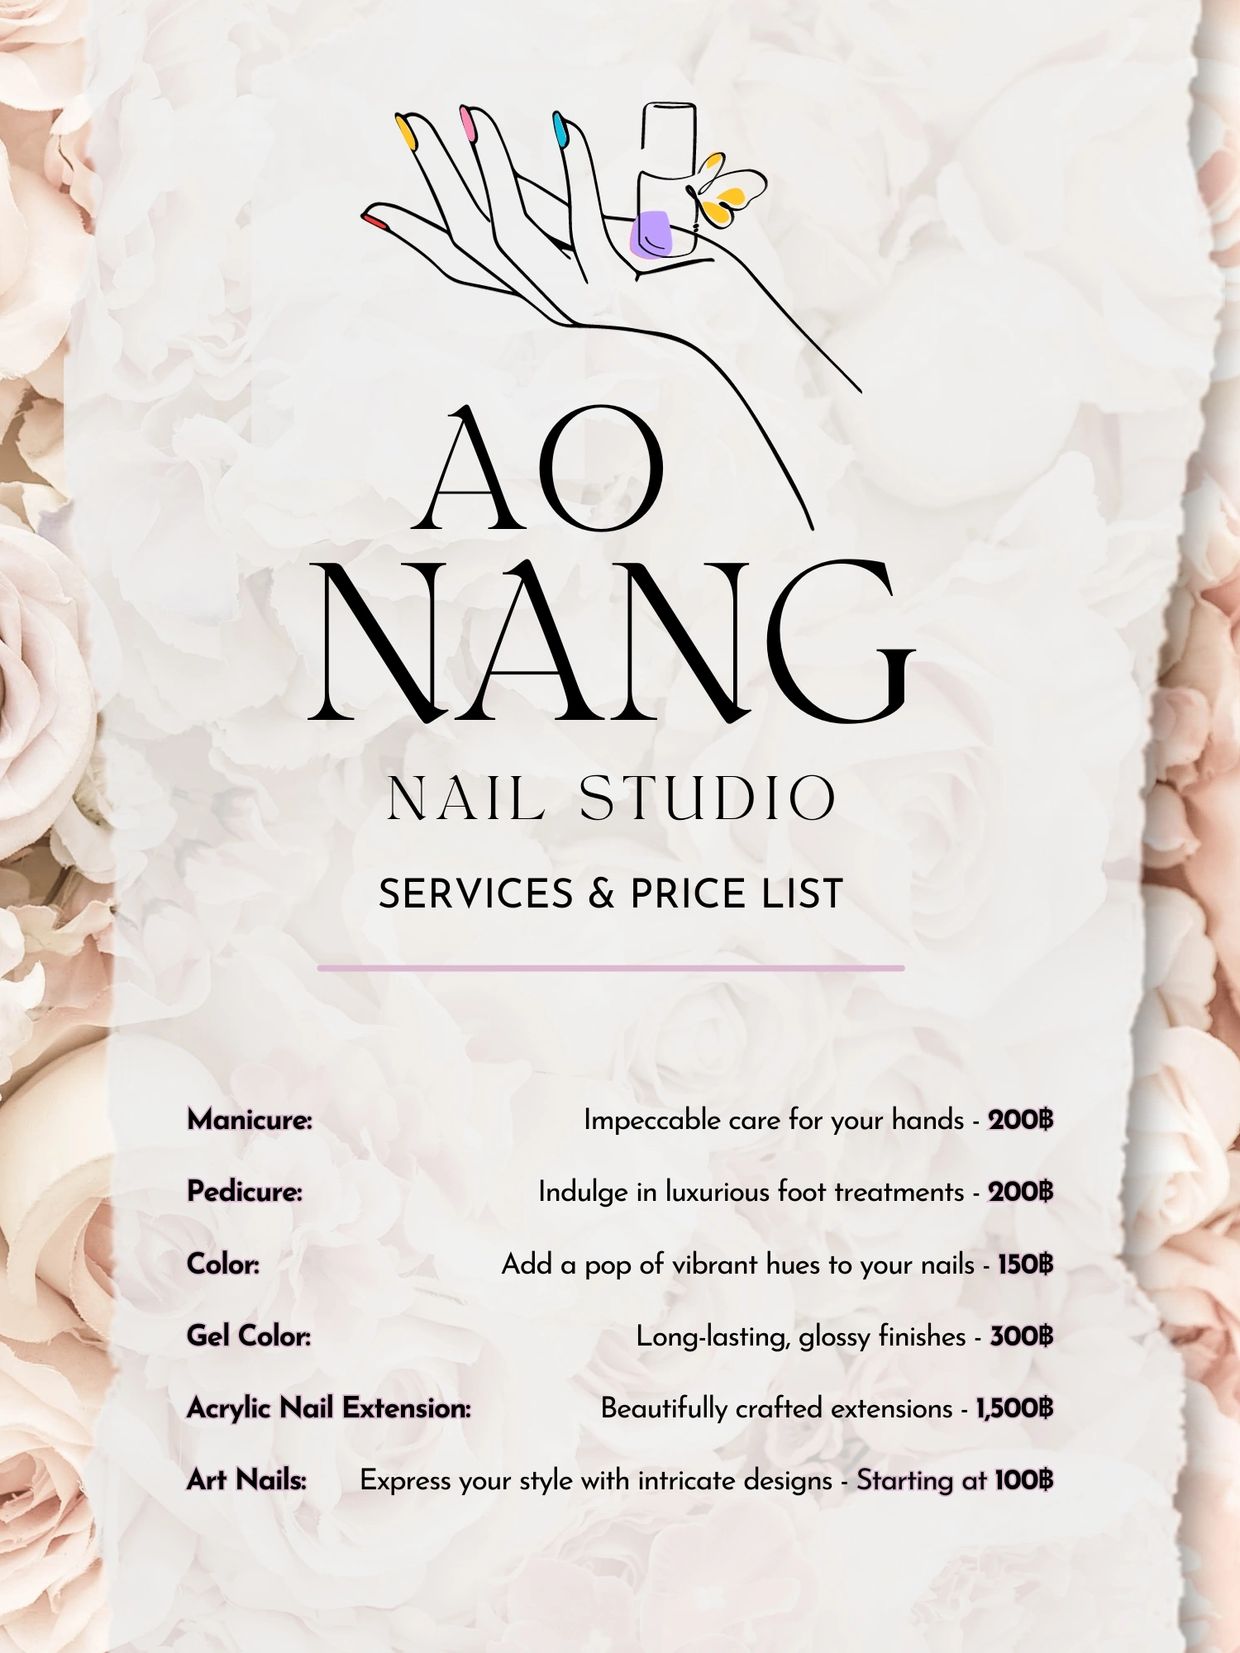 Budget-Friendly Menu: Affordable Nail Services at Ao Nang Nails